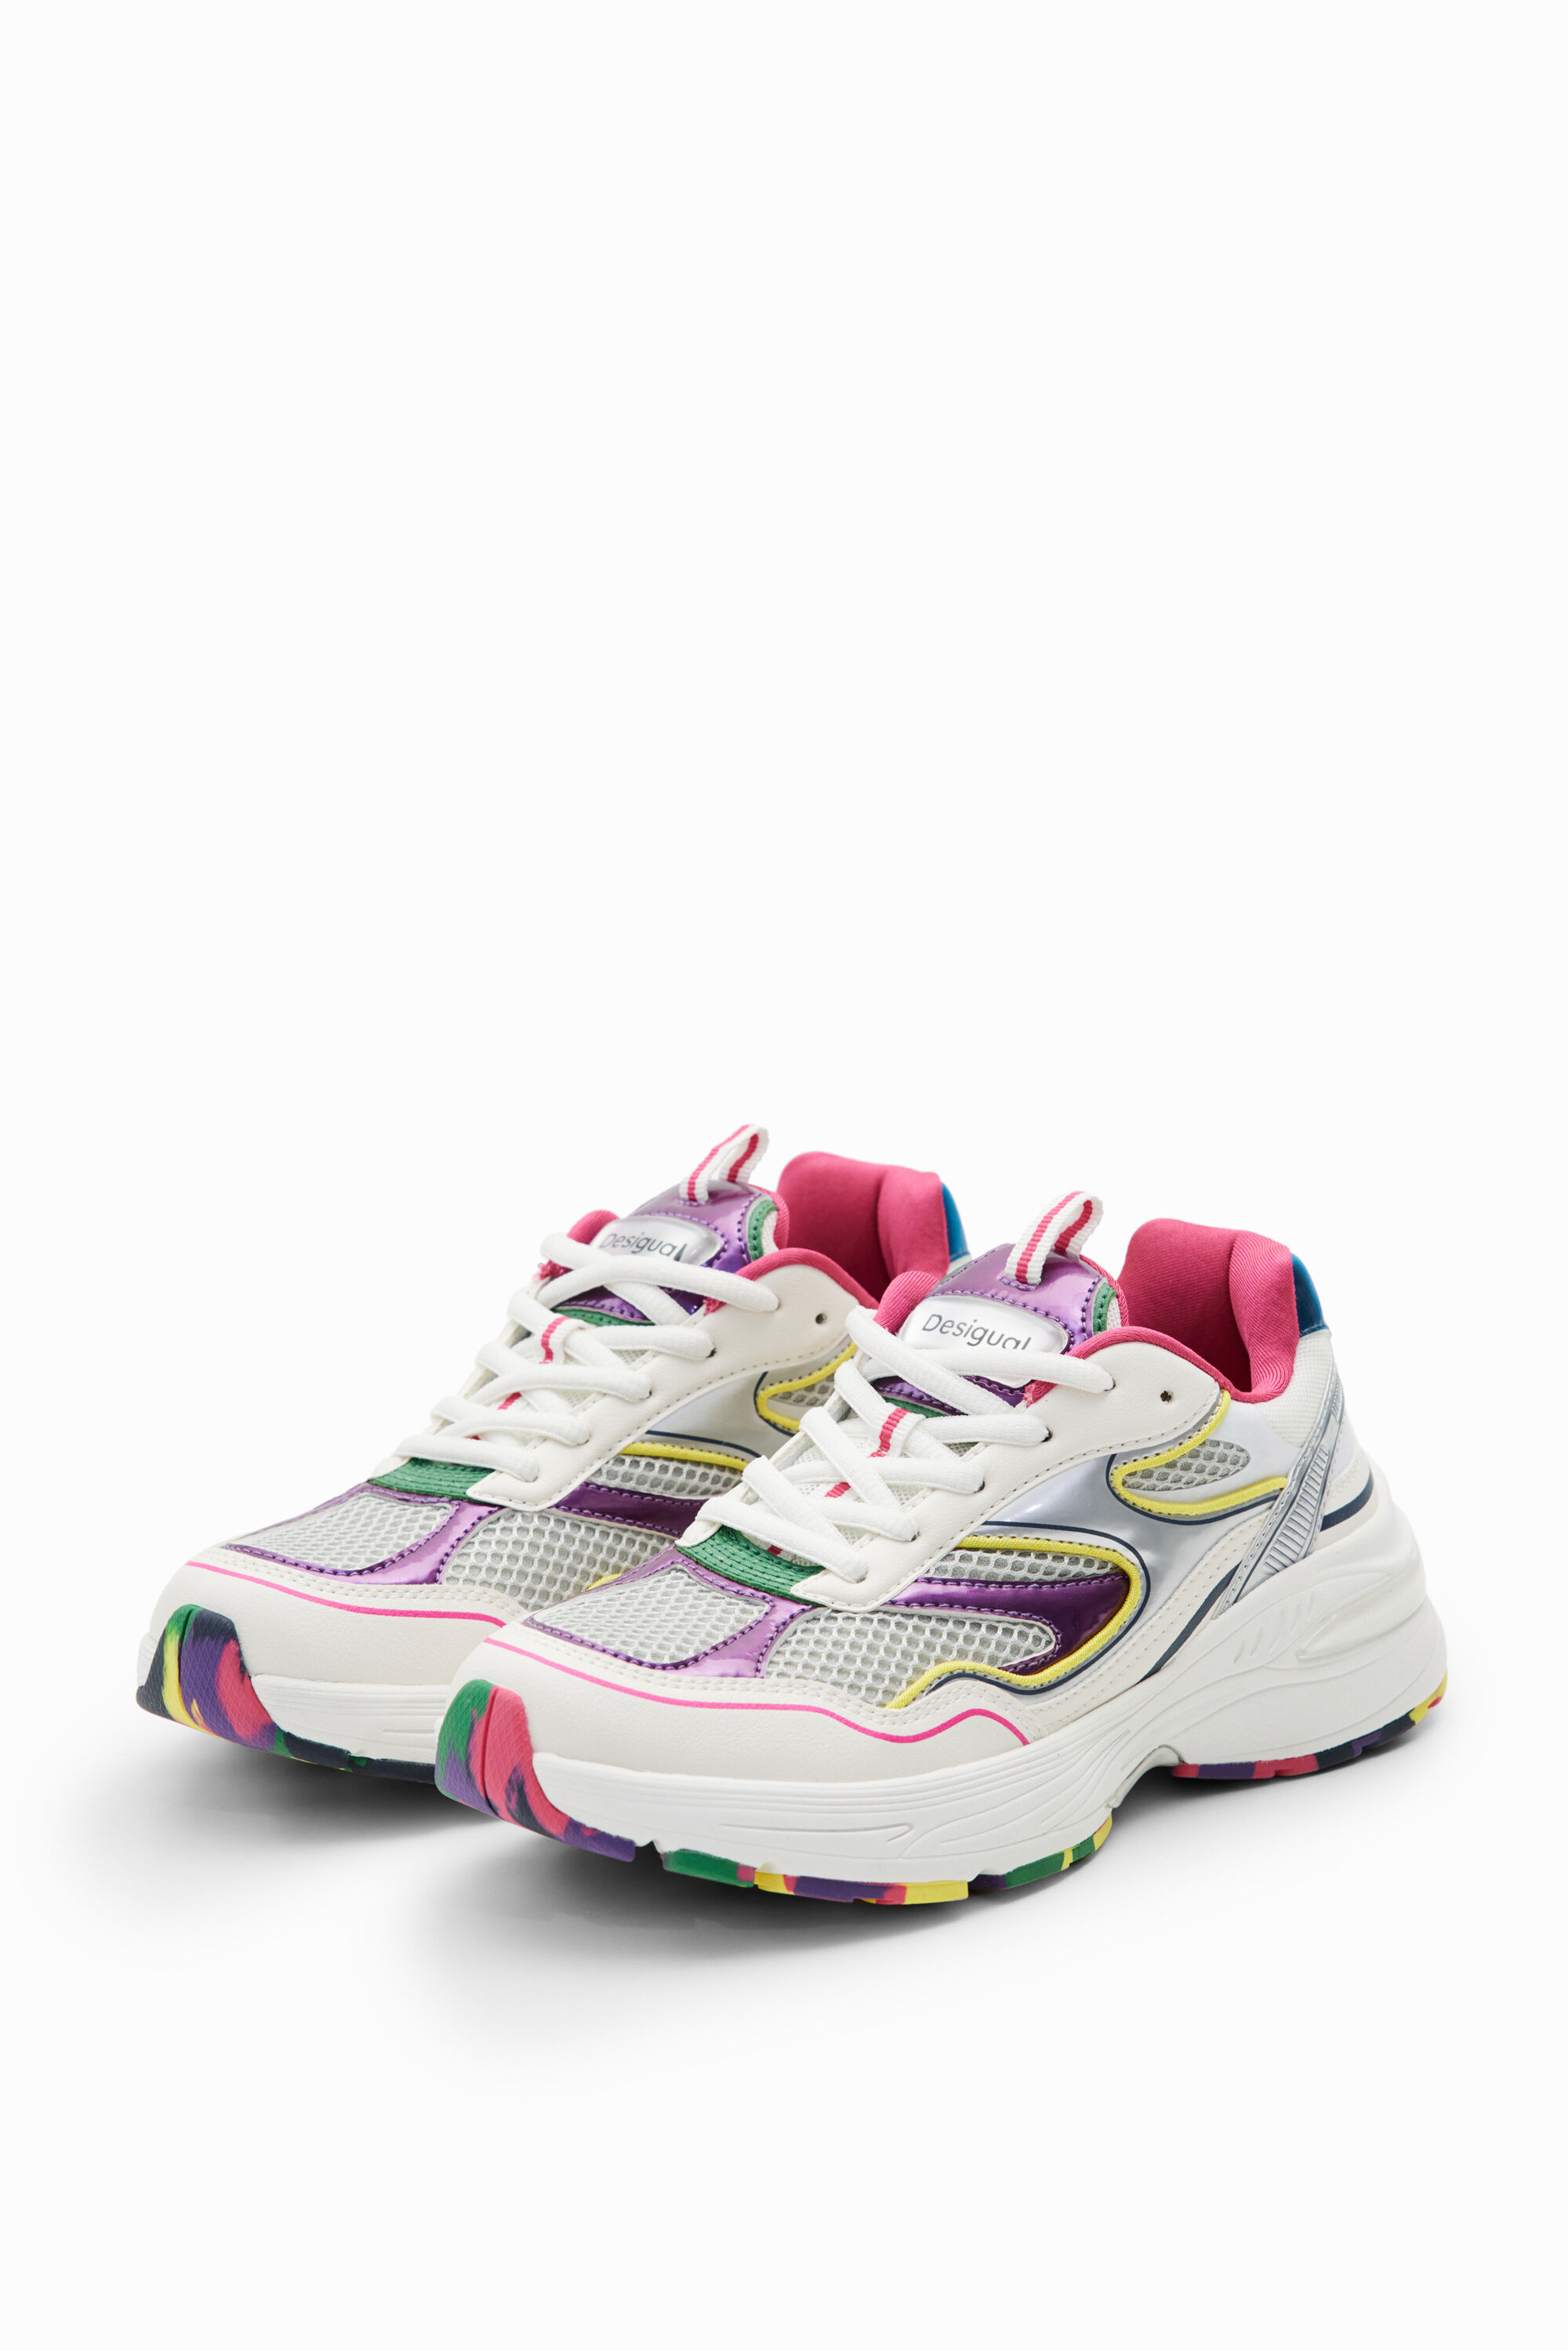 Desigual Multicolour running sneakers